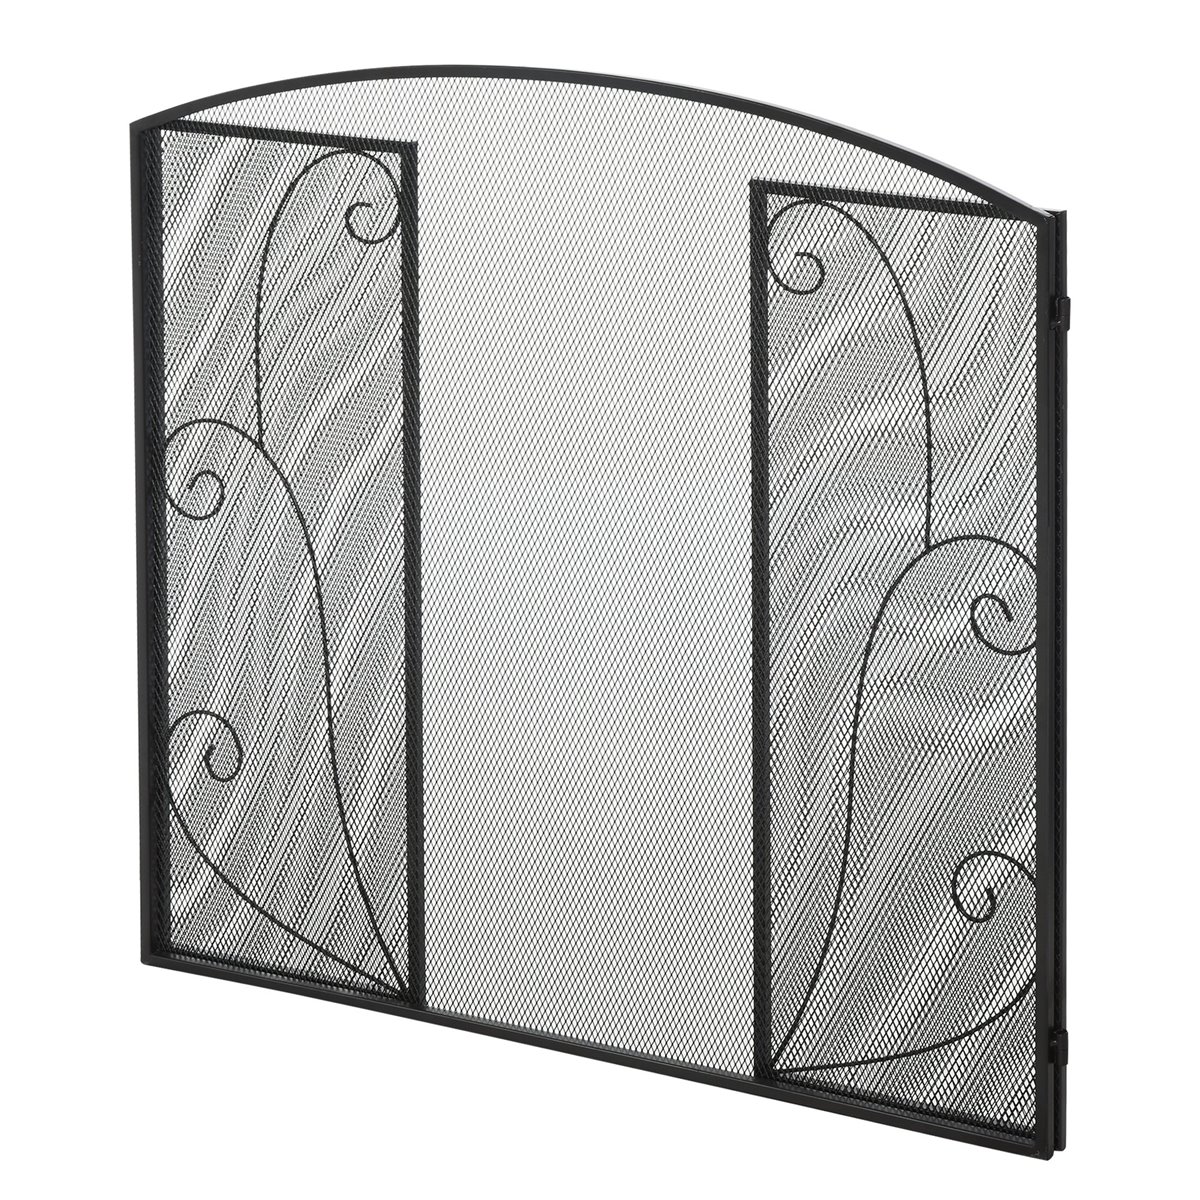 Salvachispas Plegable para Chimenea Pantalla Triple Protector para Estufas  3 Paneles con Bisagras Estructura de Metal y Alambre Decorativo 105x80,5 cm  Negro